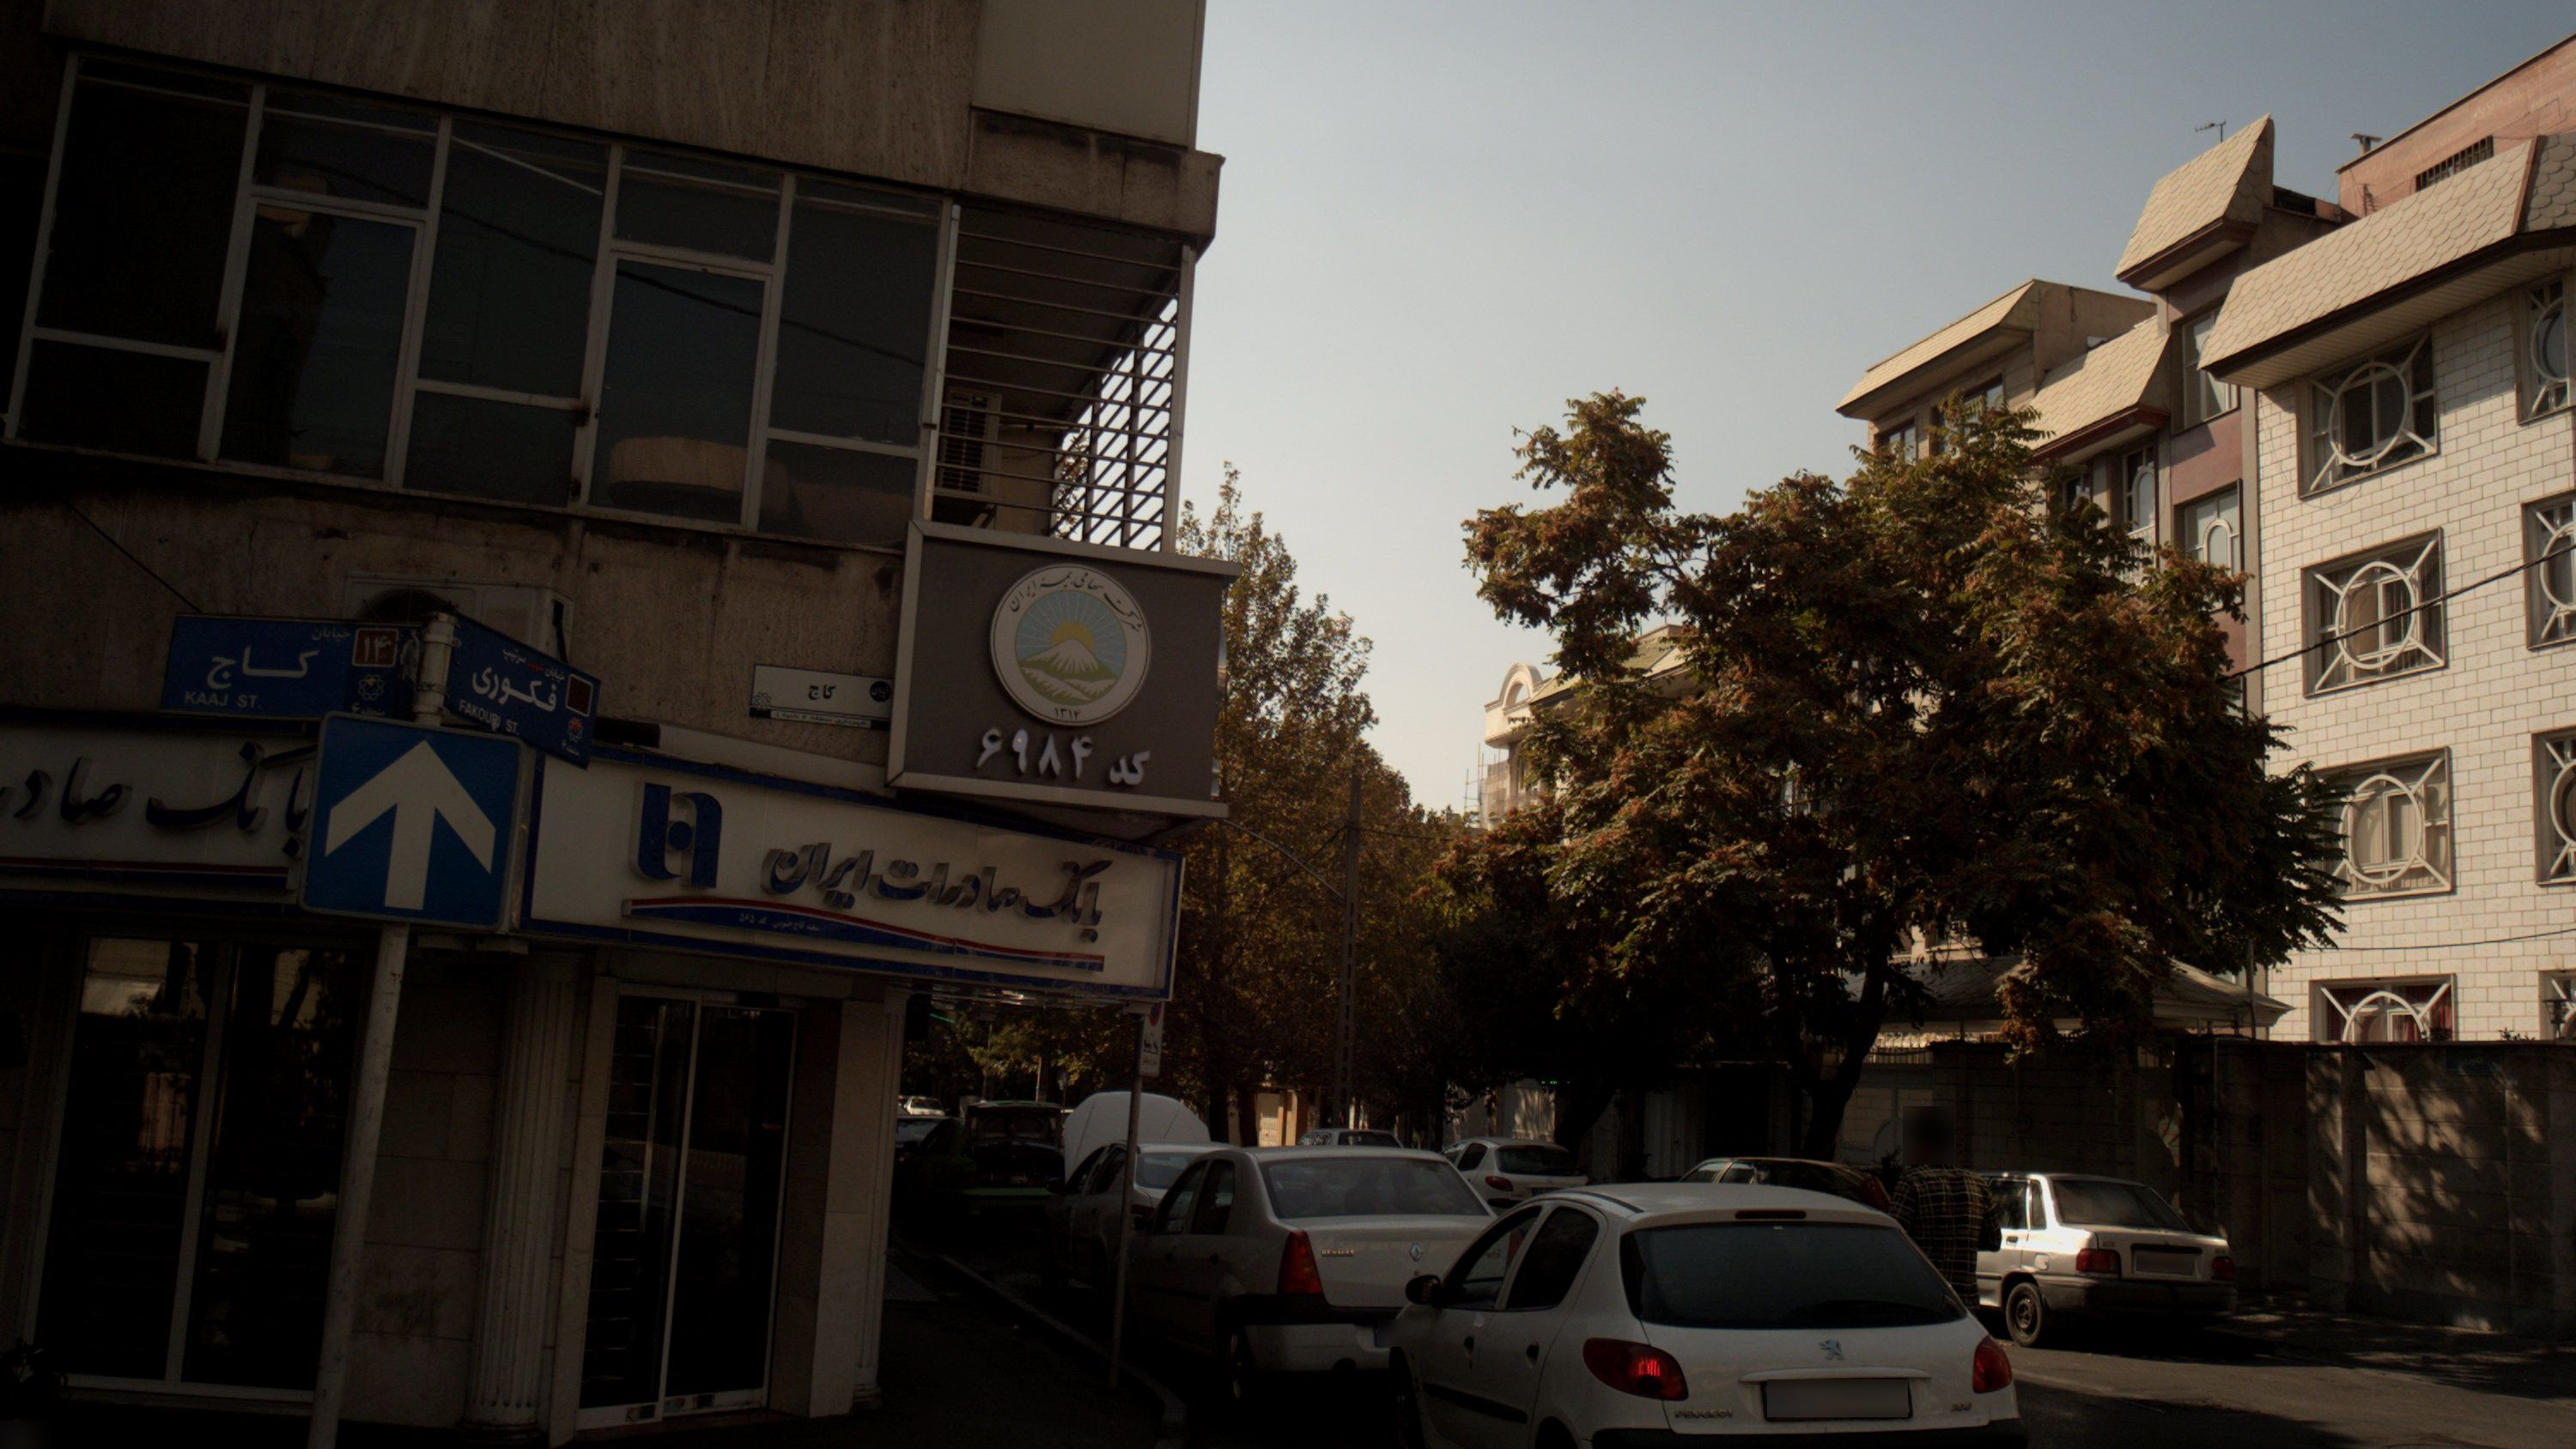 شرکت سهامی بیمه ایران